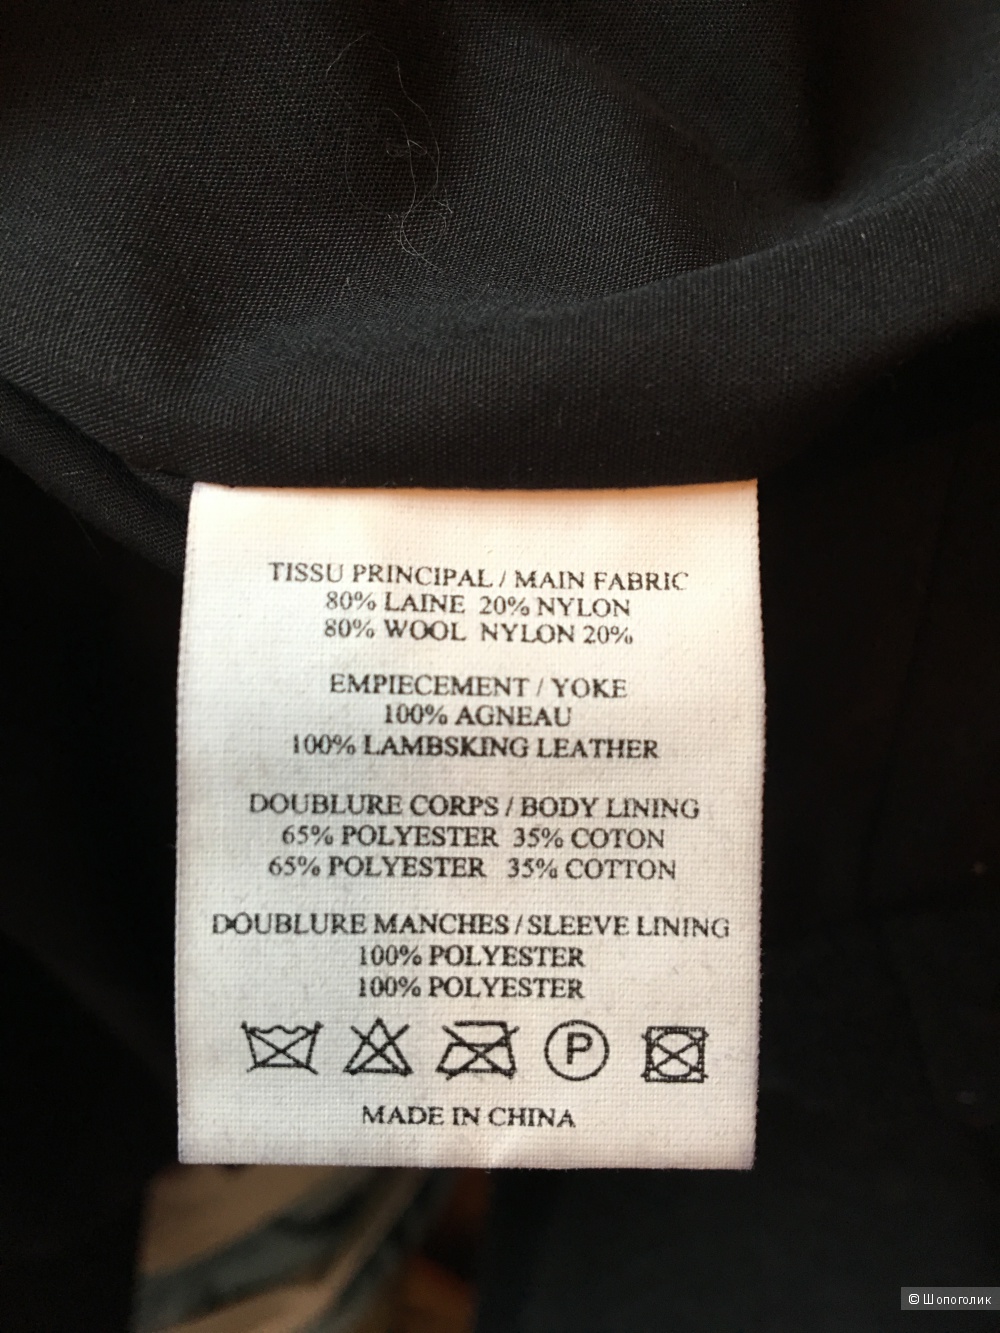 Шерстяная утепленная черная куртка-жакет с кожей Vanessa Bruno Athe p.FR42 (на росс.48)